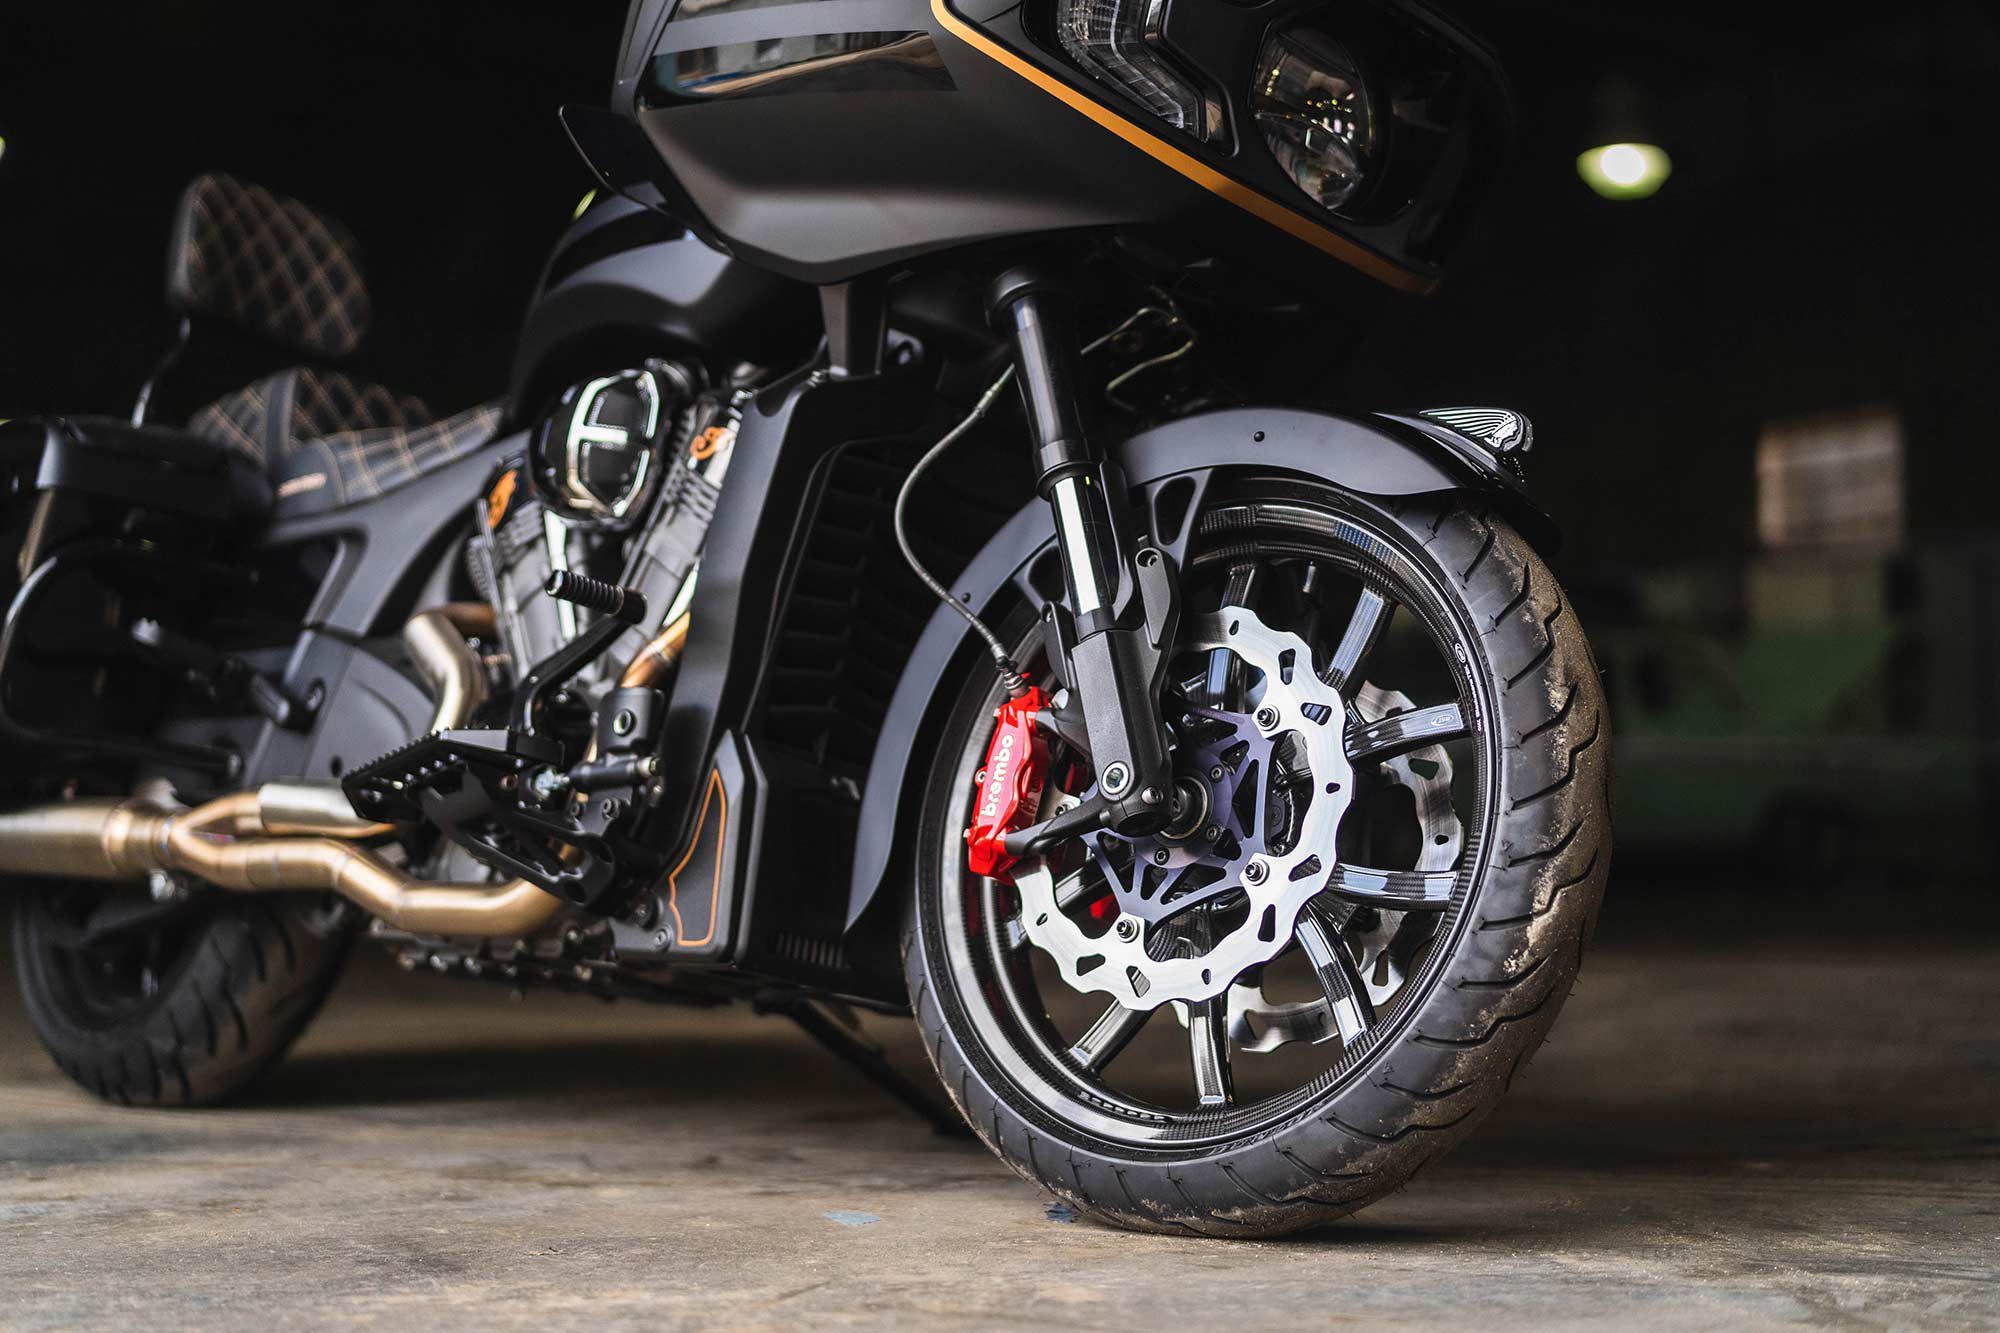 Les rotors ondulés Galfer, les étriers de frein Brembo et les roues en fibre de carbone s'adaptent tous à l'esthétique haute performance de la construction tout en améliorant les performances globales du vélo.